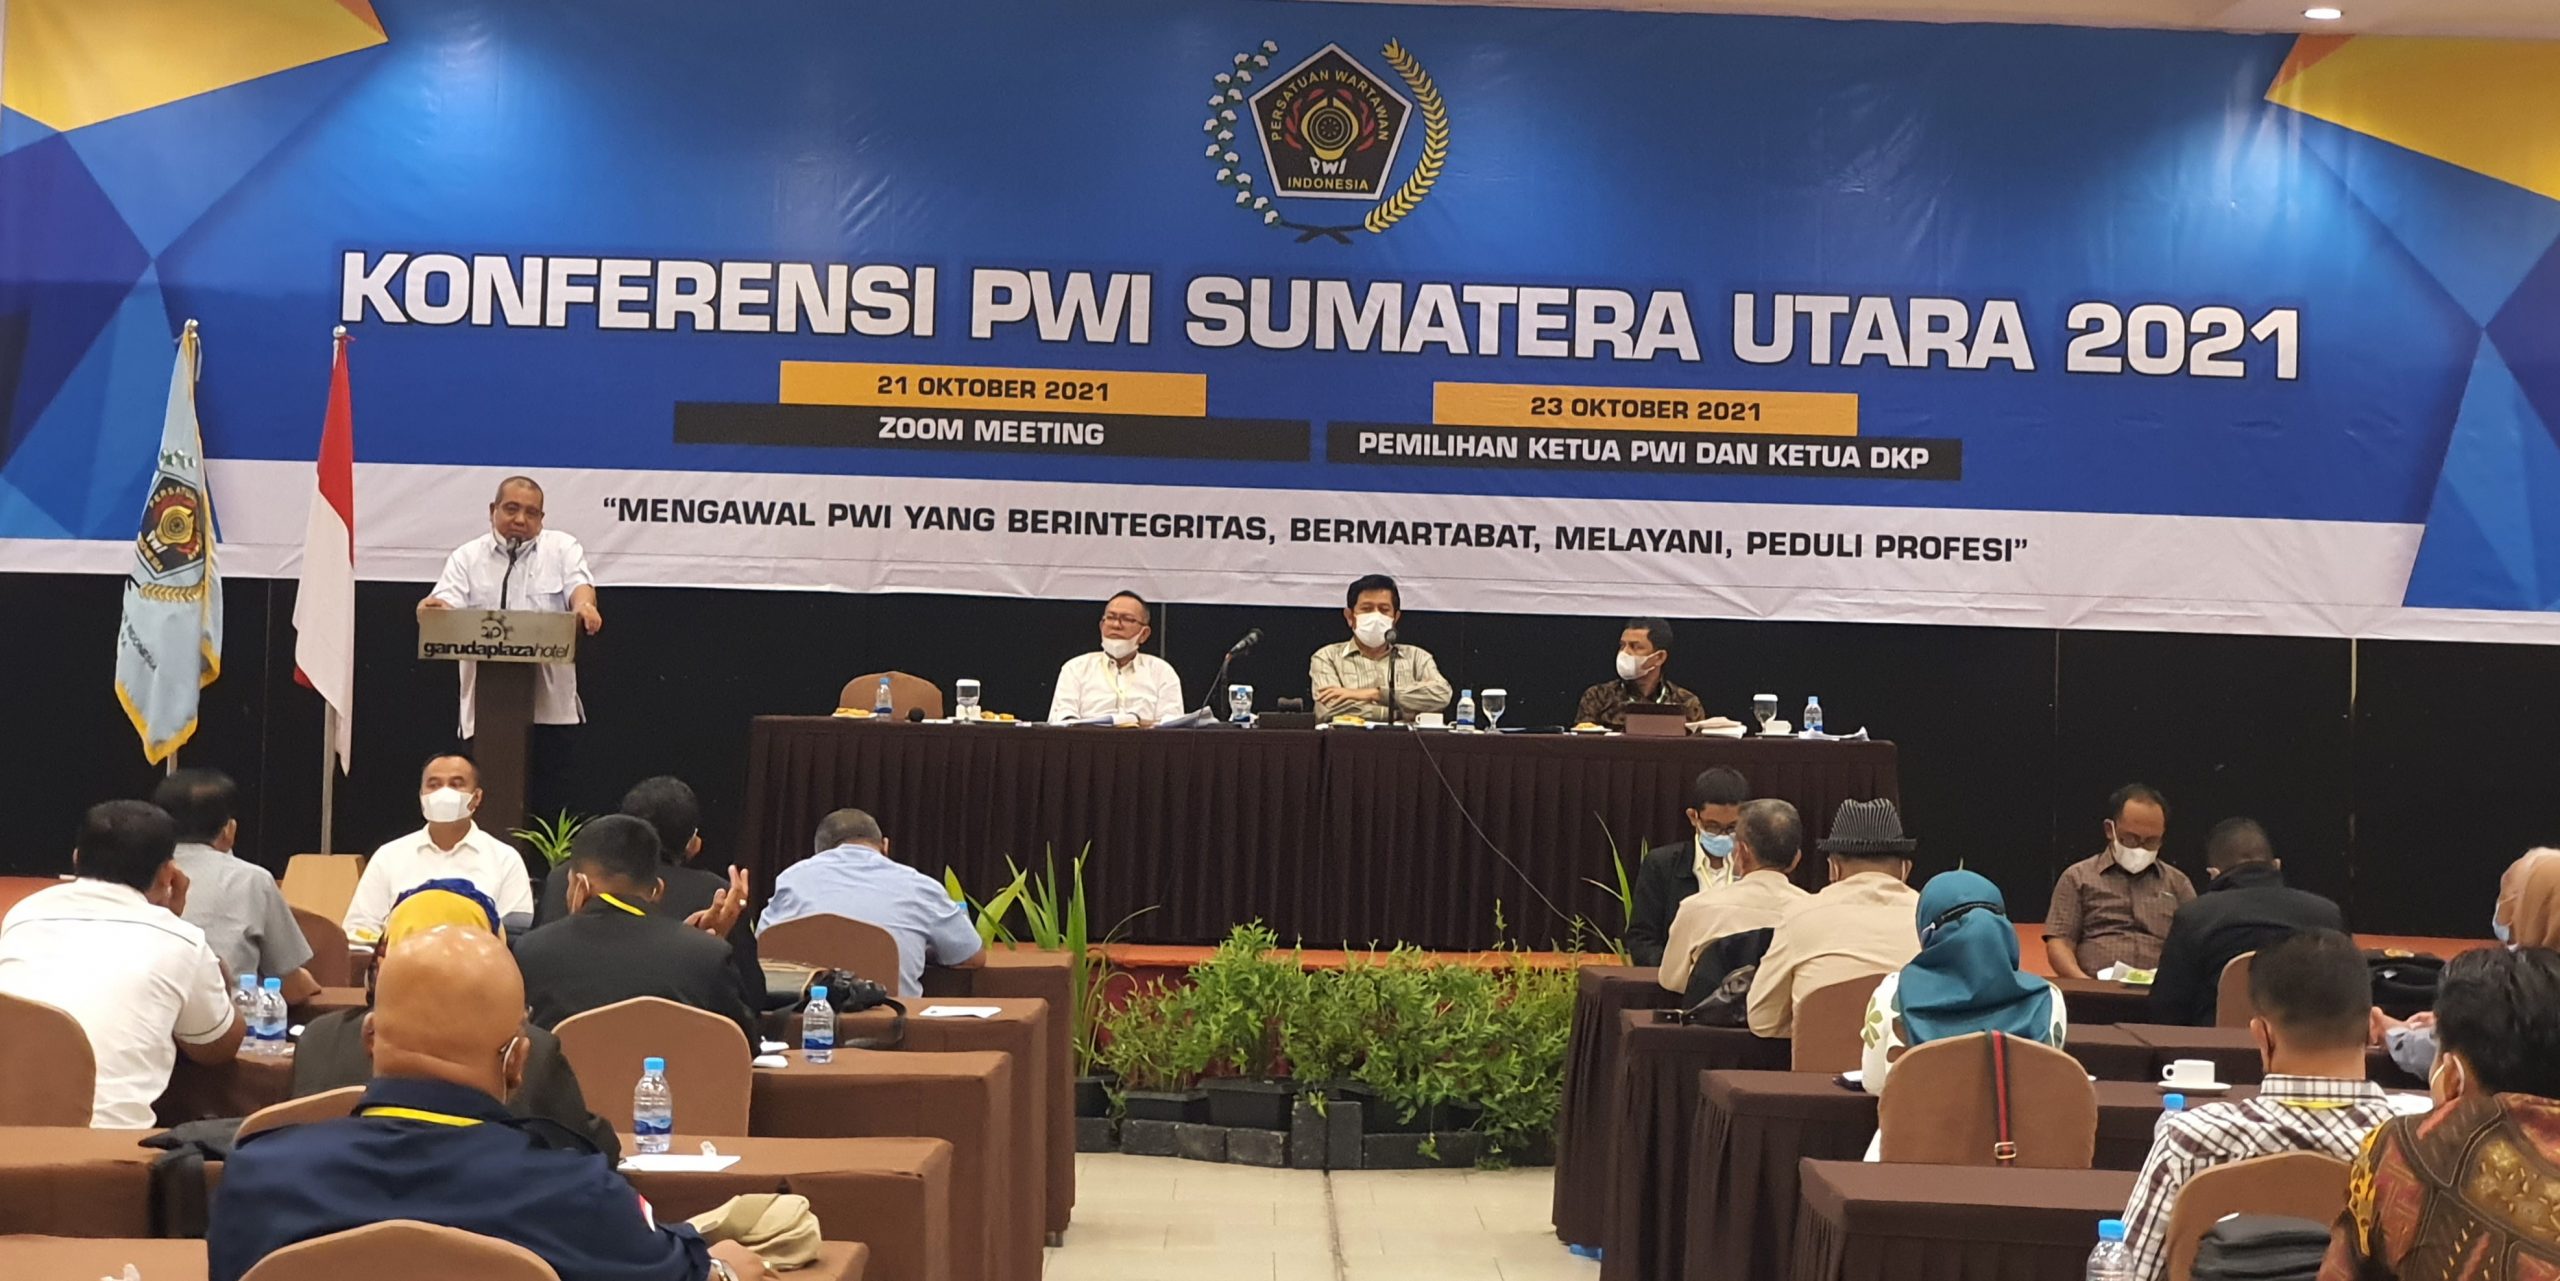 Farianda Putra Sinik, terpilih sebagai Ketua Persatuan Wartawan Indonesia (PWI) Sumatera Utara periode 2021-2026